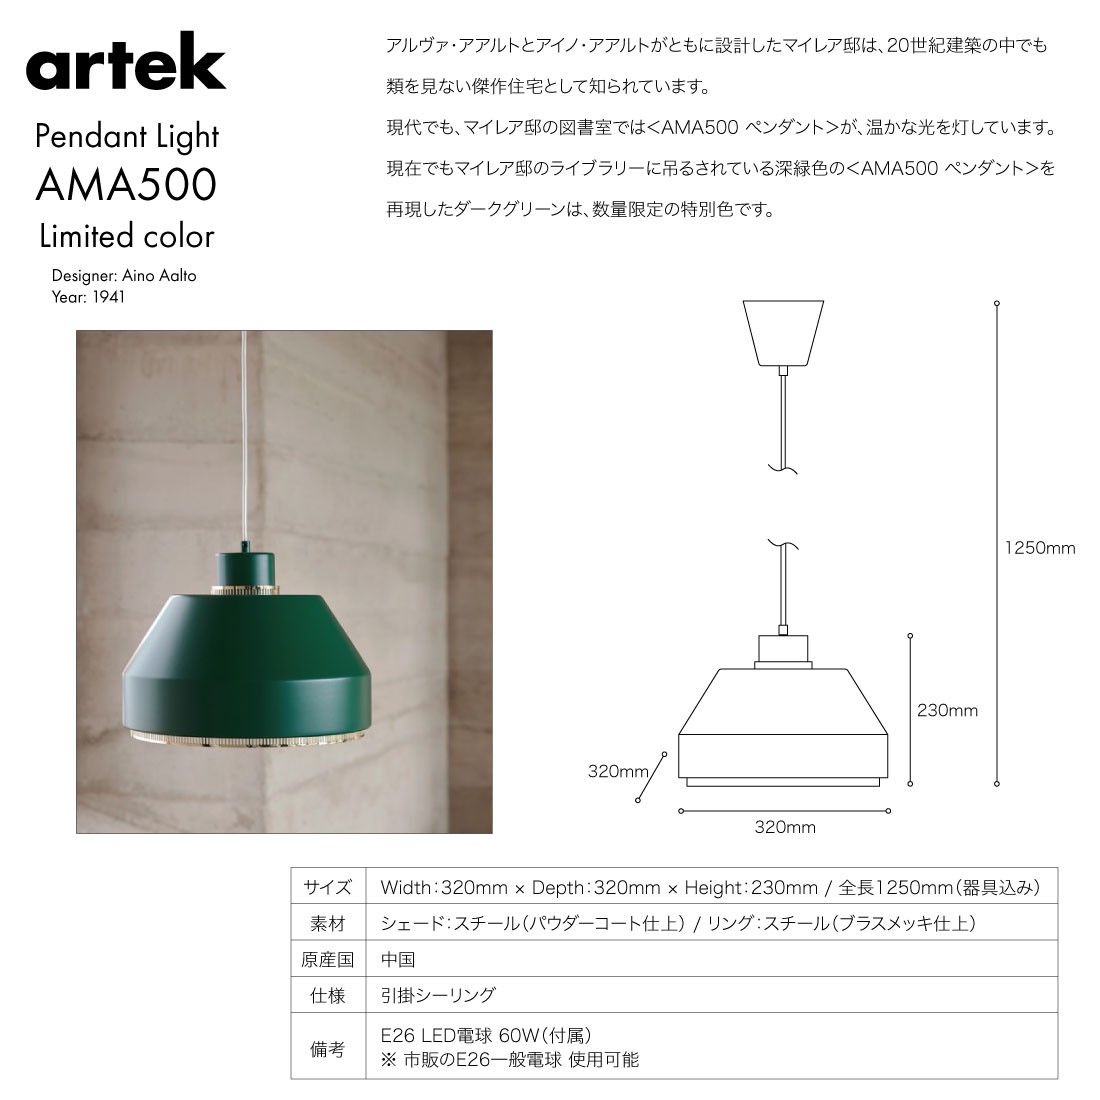 ガチャプレゼント中】 artek アルテック Pendant Light AMA500 限定色